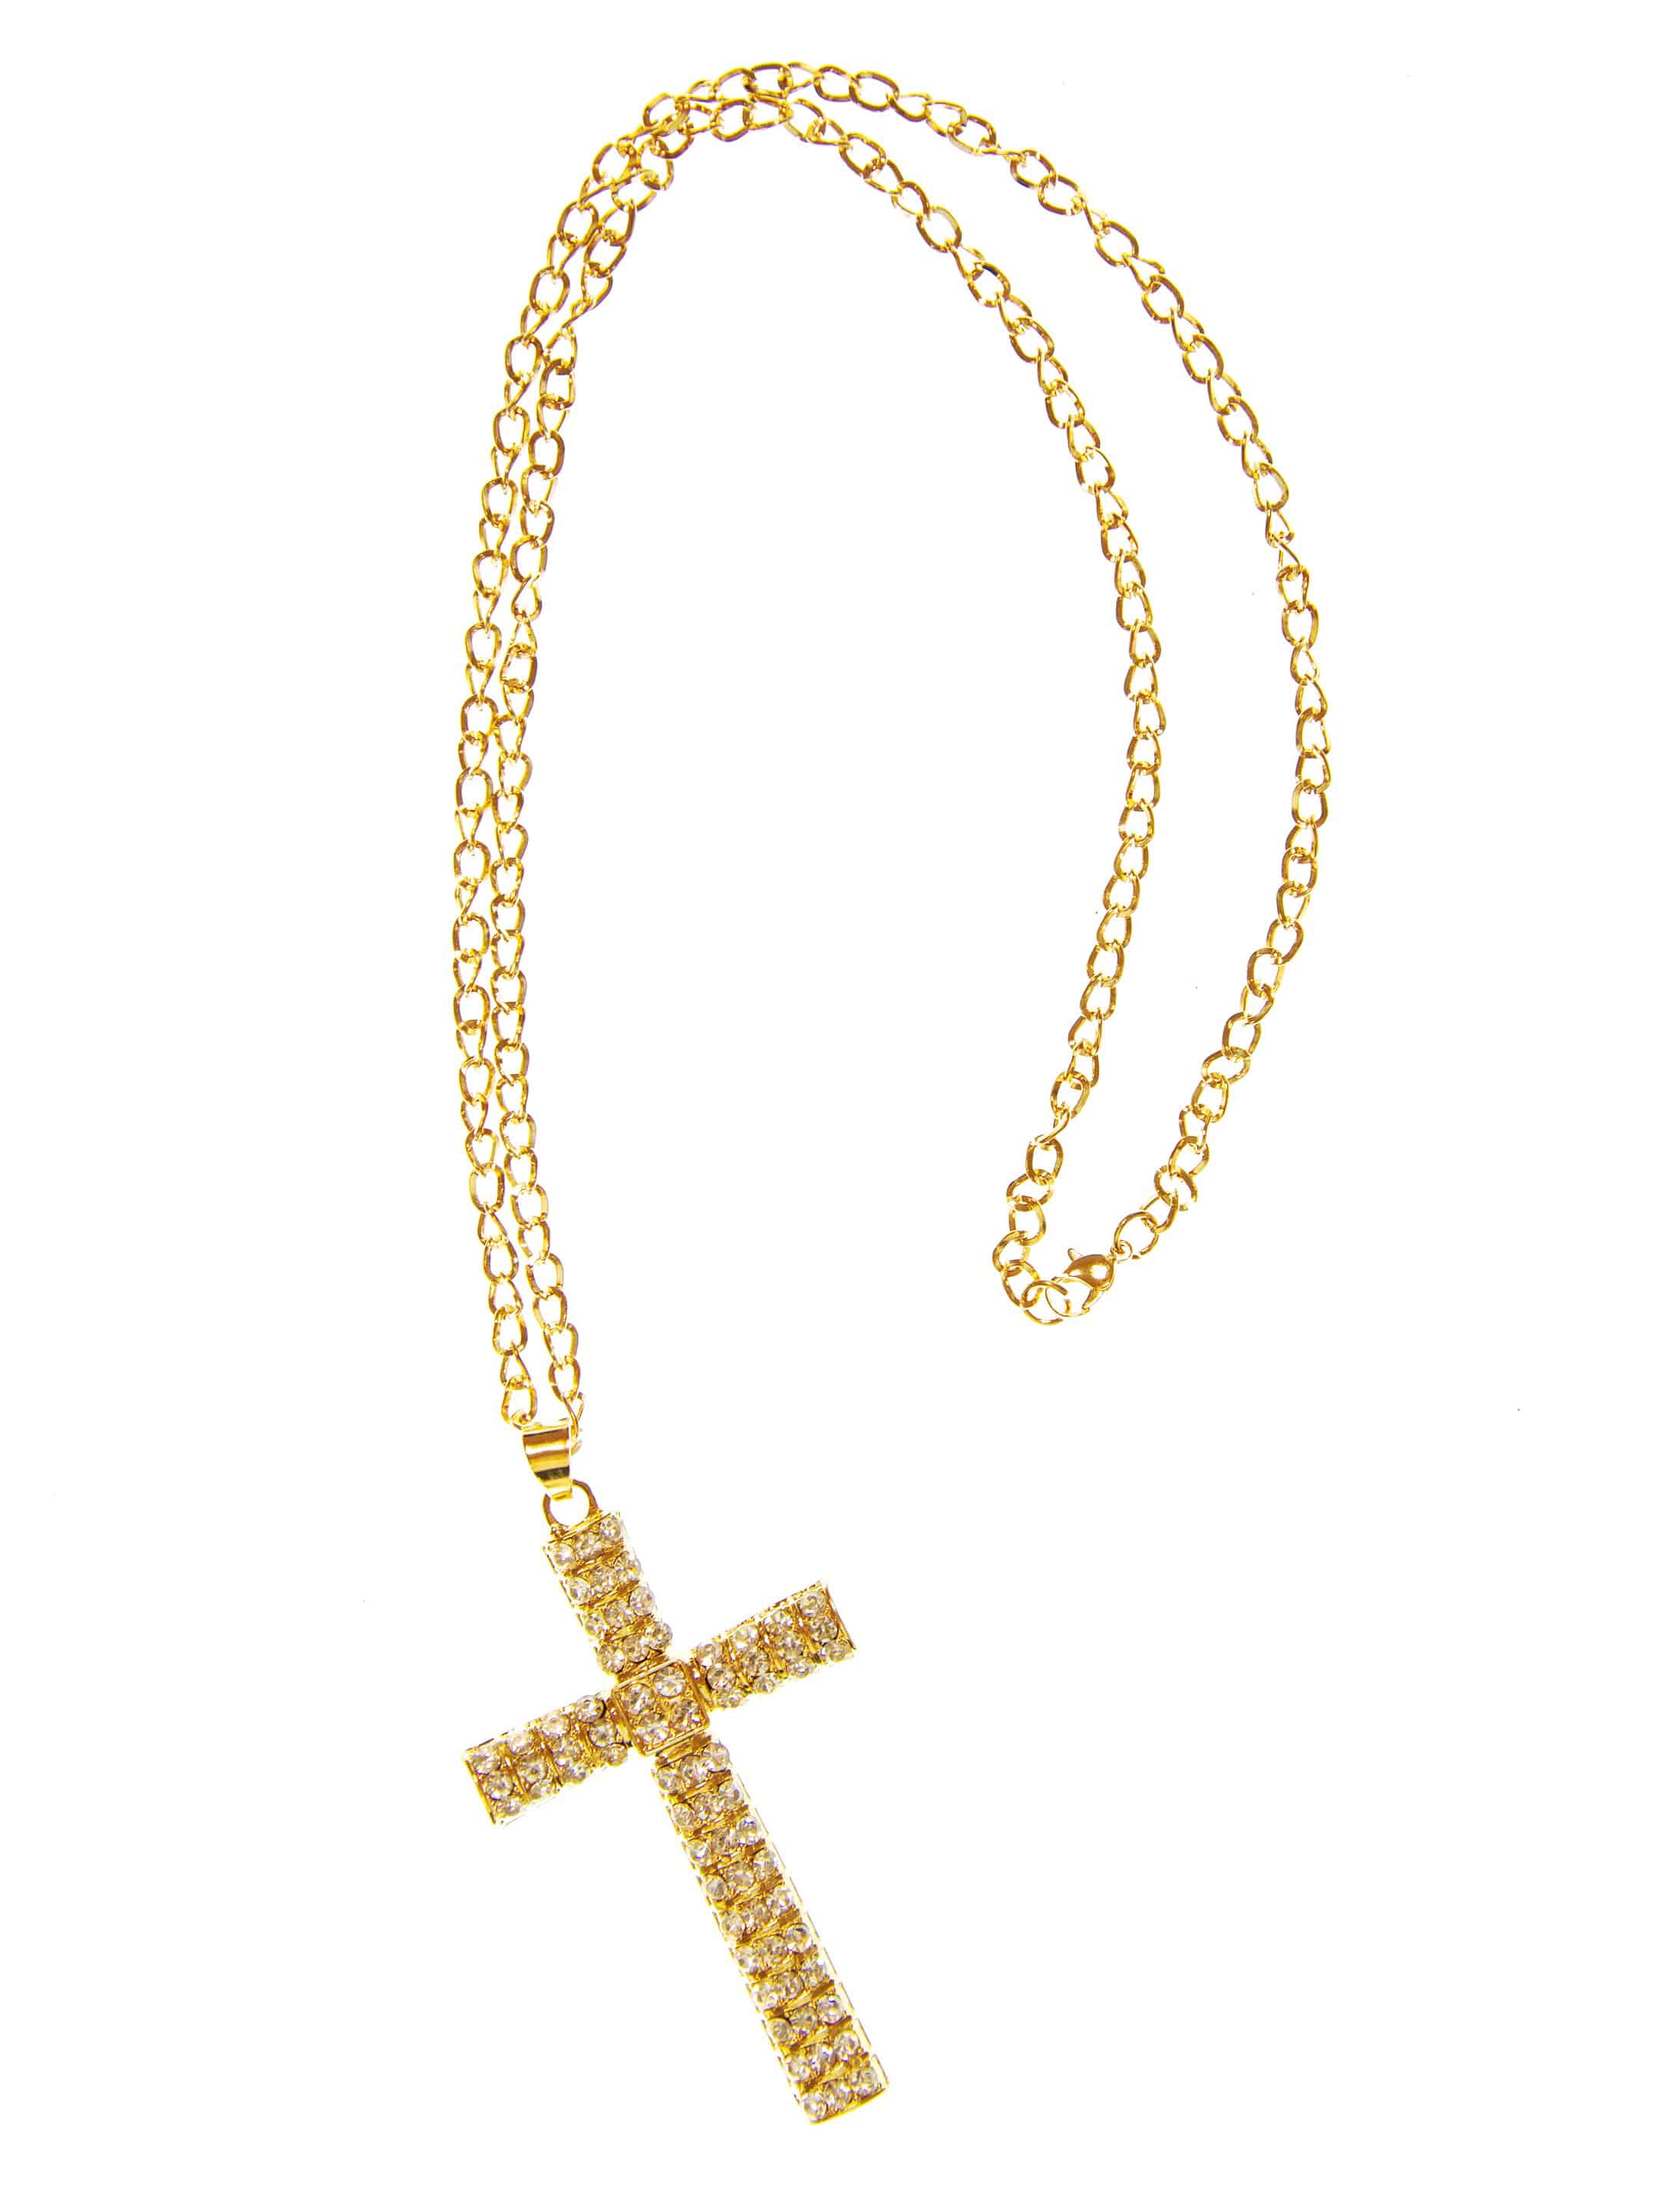 Halskette Kreuz mit Steinchen gold